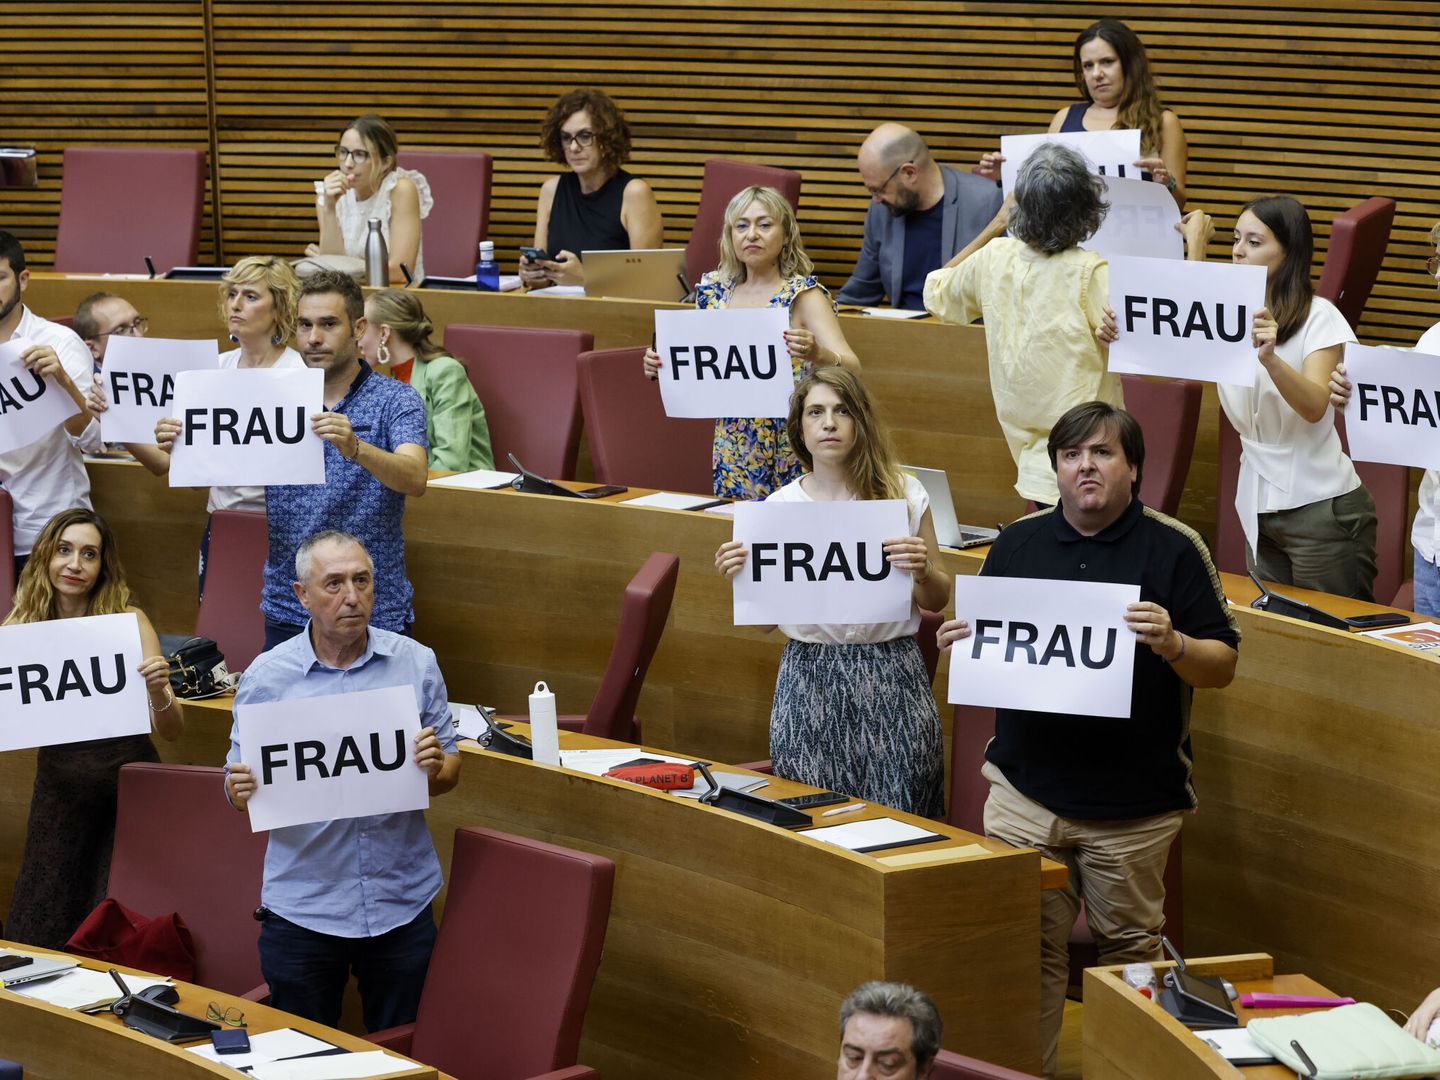 Los diputados de Compromís muestran carteles con el lema 'Frau' (fraude) en la votación del nuevo director de Antifraude. (EFE/Ana Escobar) 